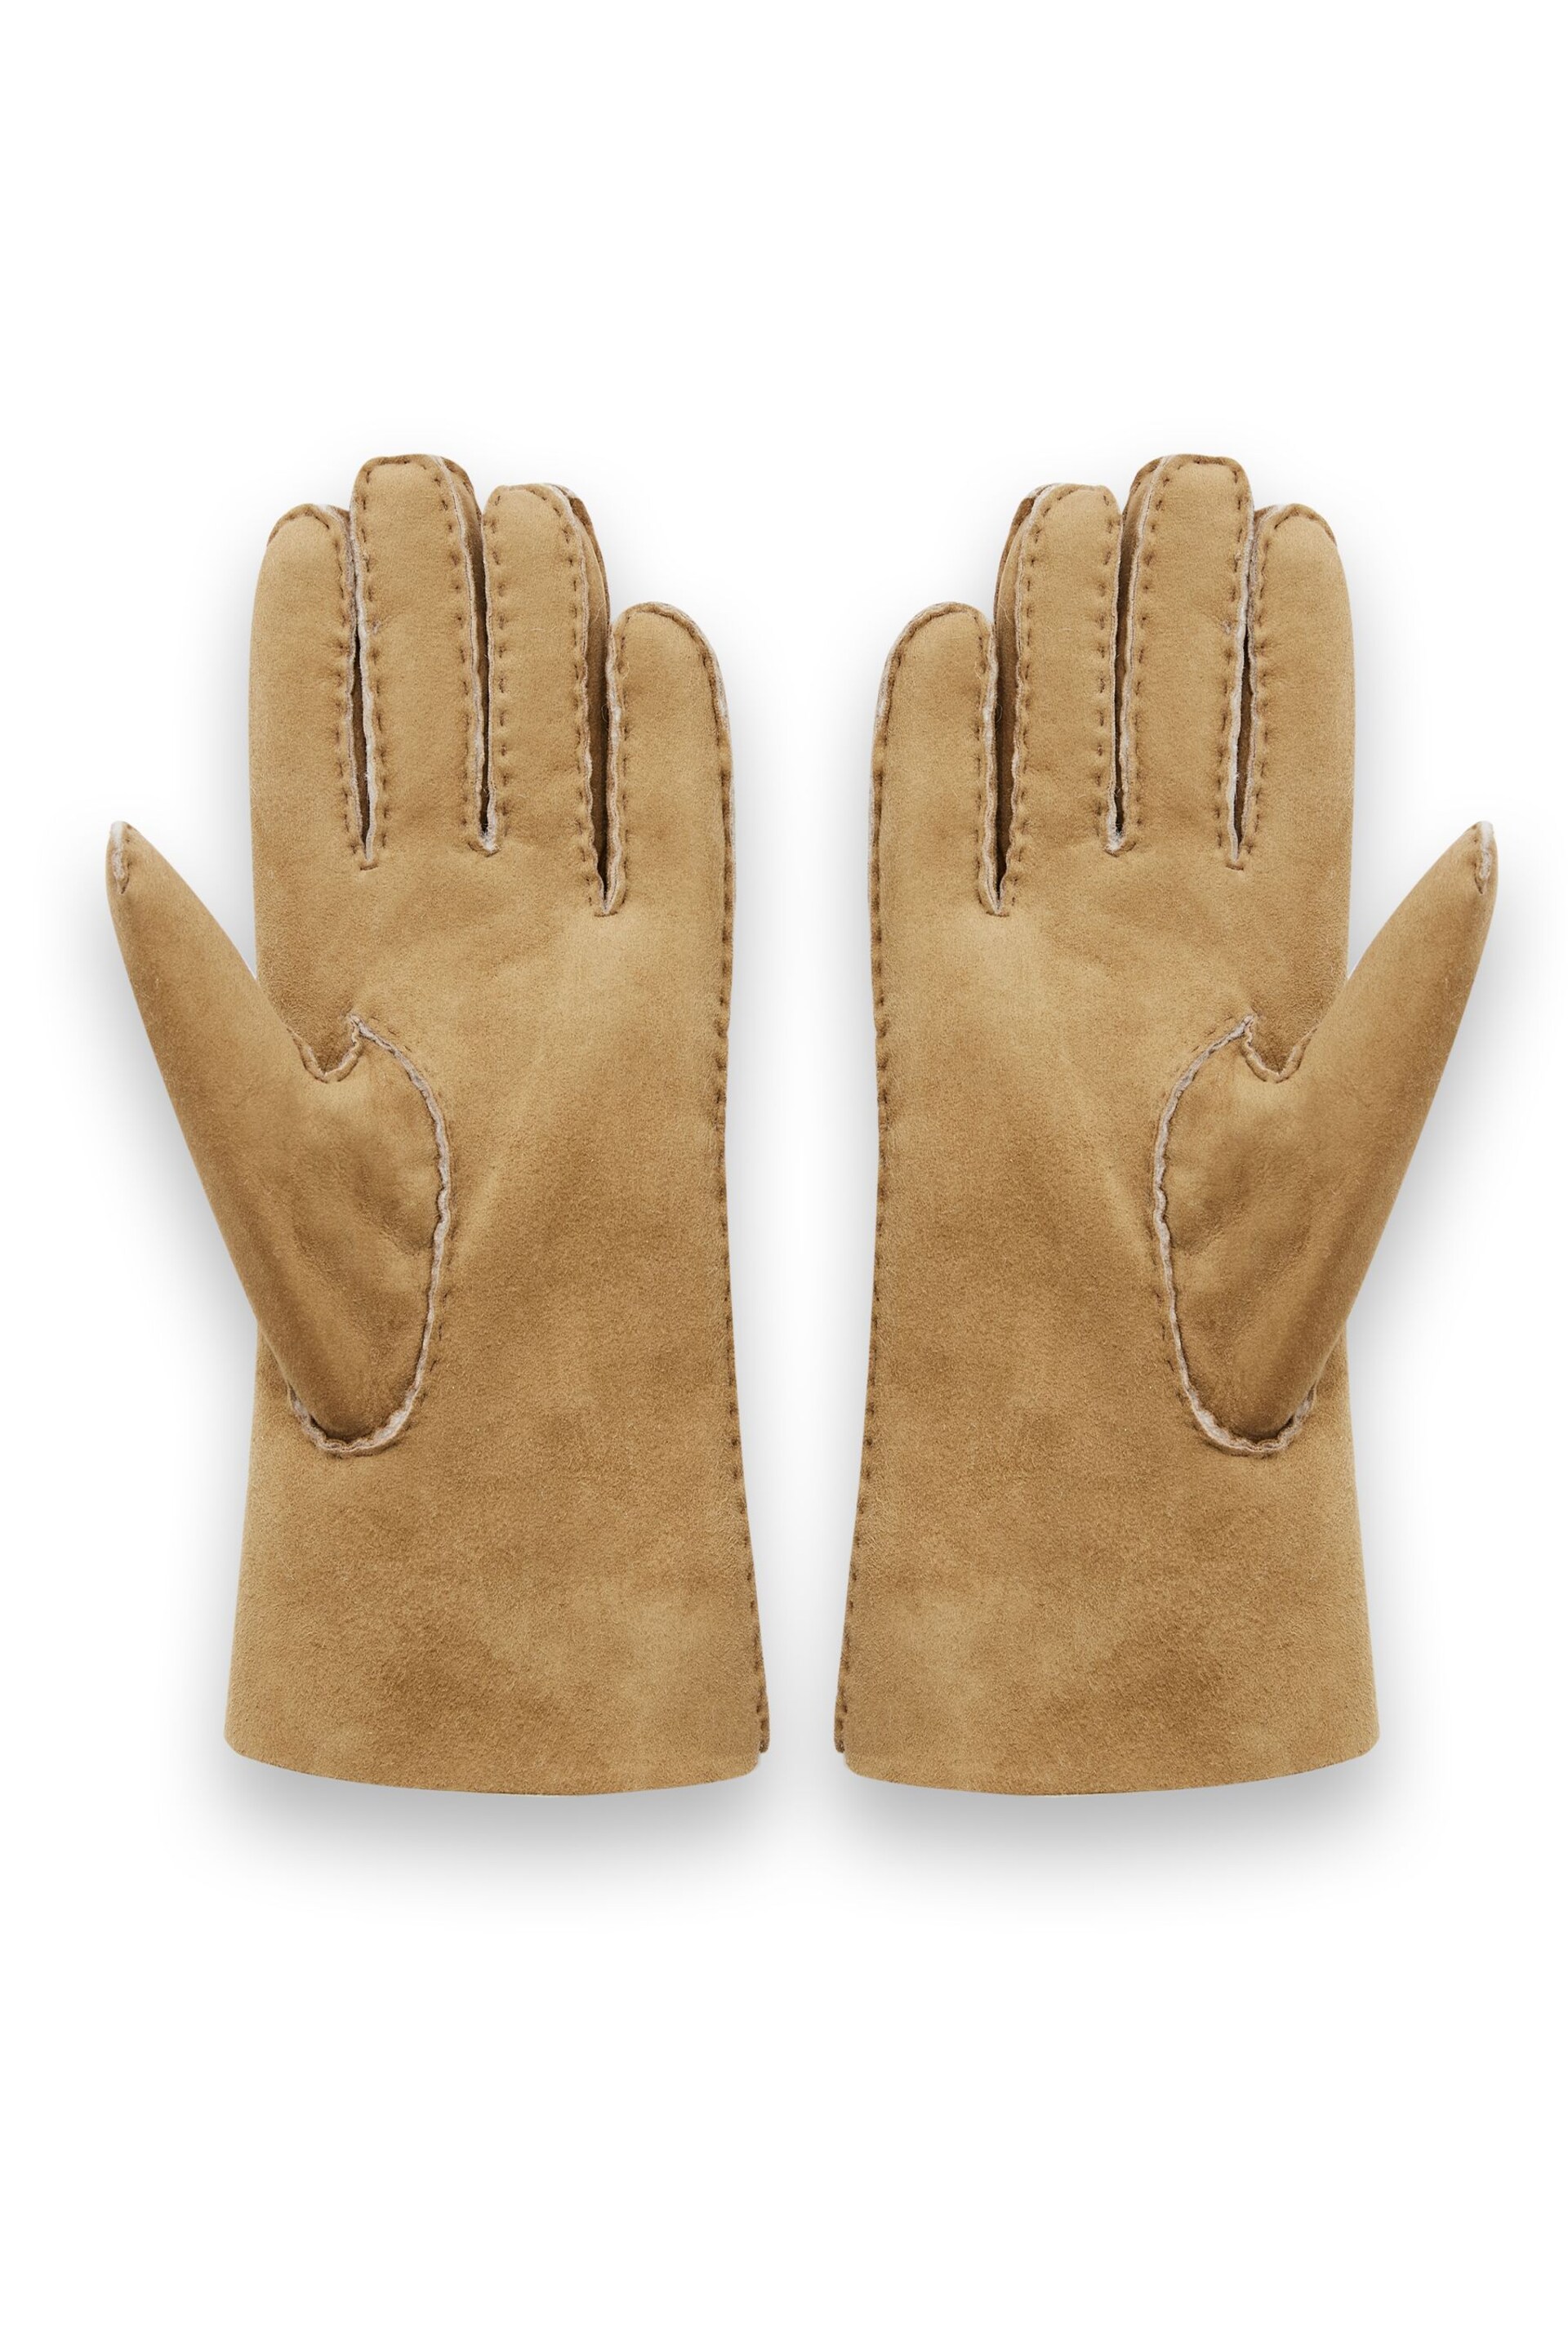 Celtic & Co. Natural Sheepskin Gloves - Image 2 of 4